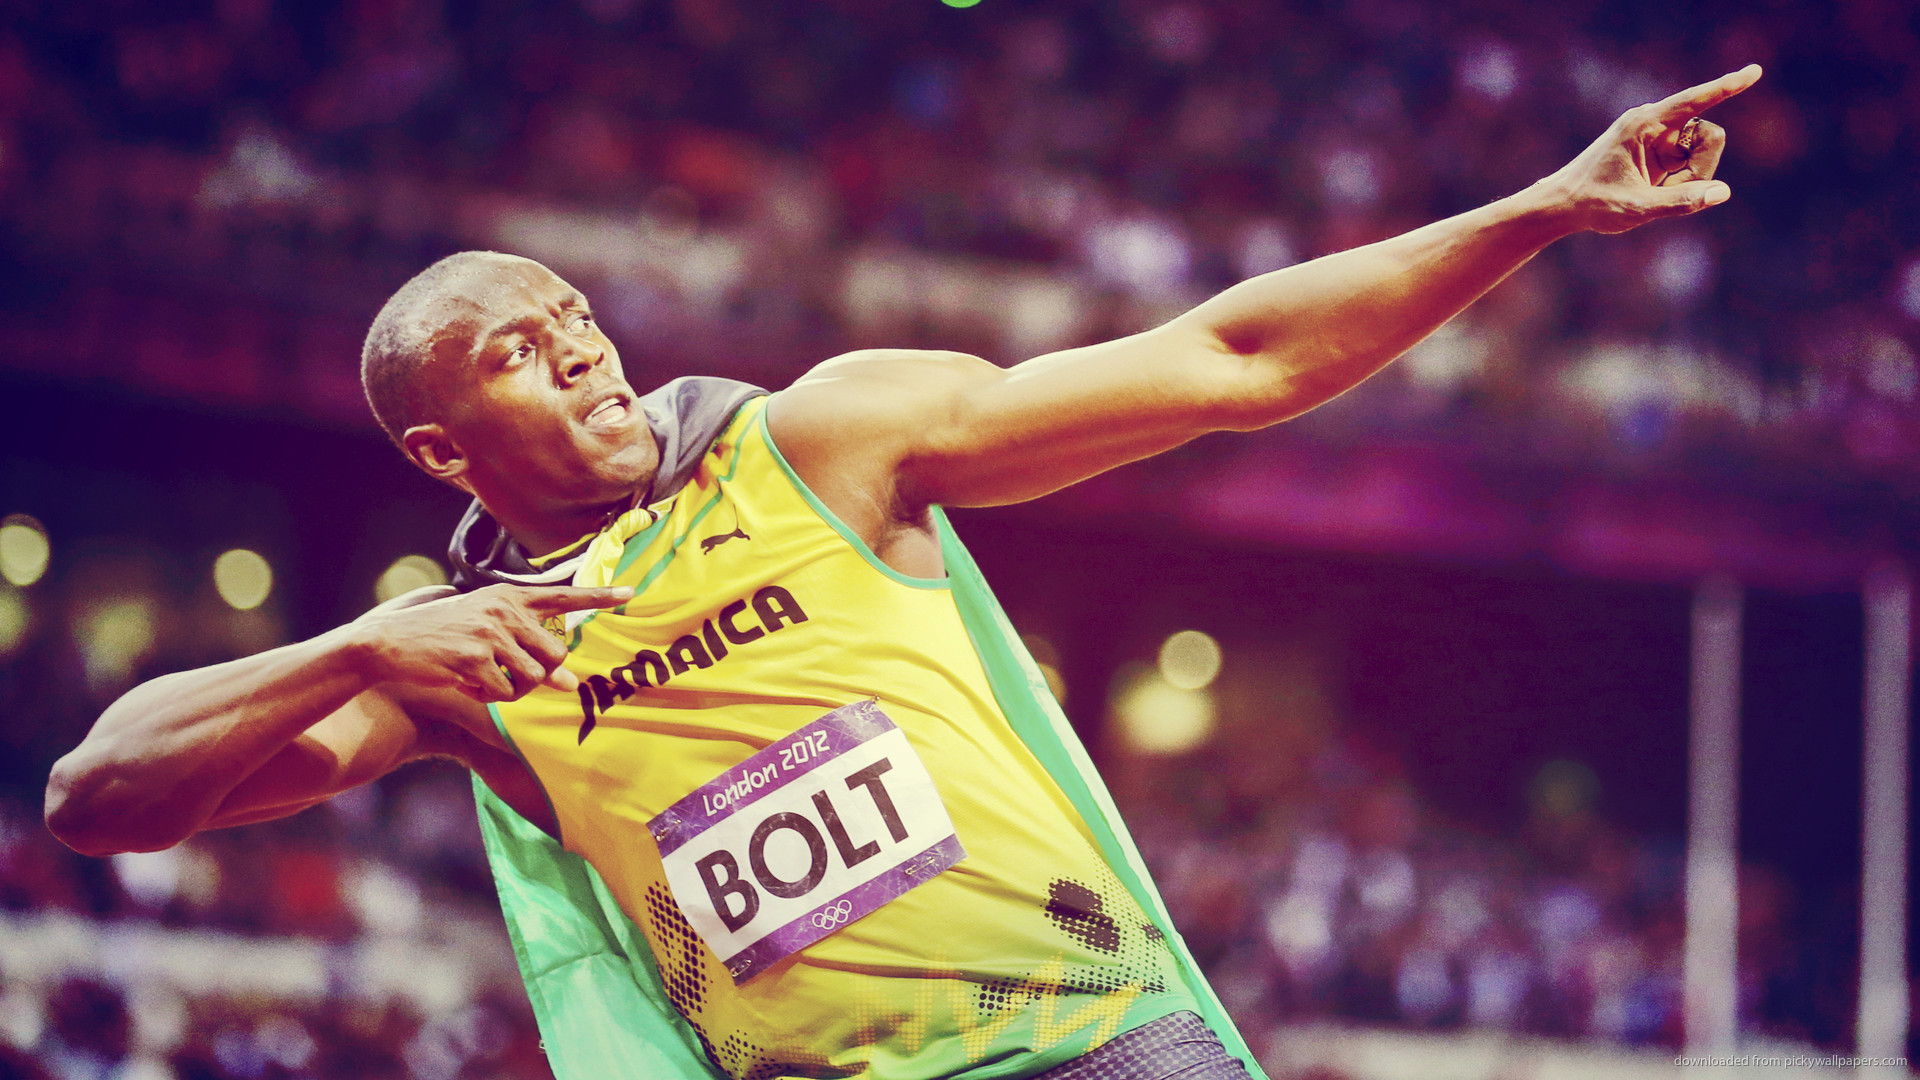 1920x1080 Classic Usain Bolt picture